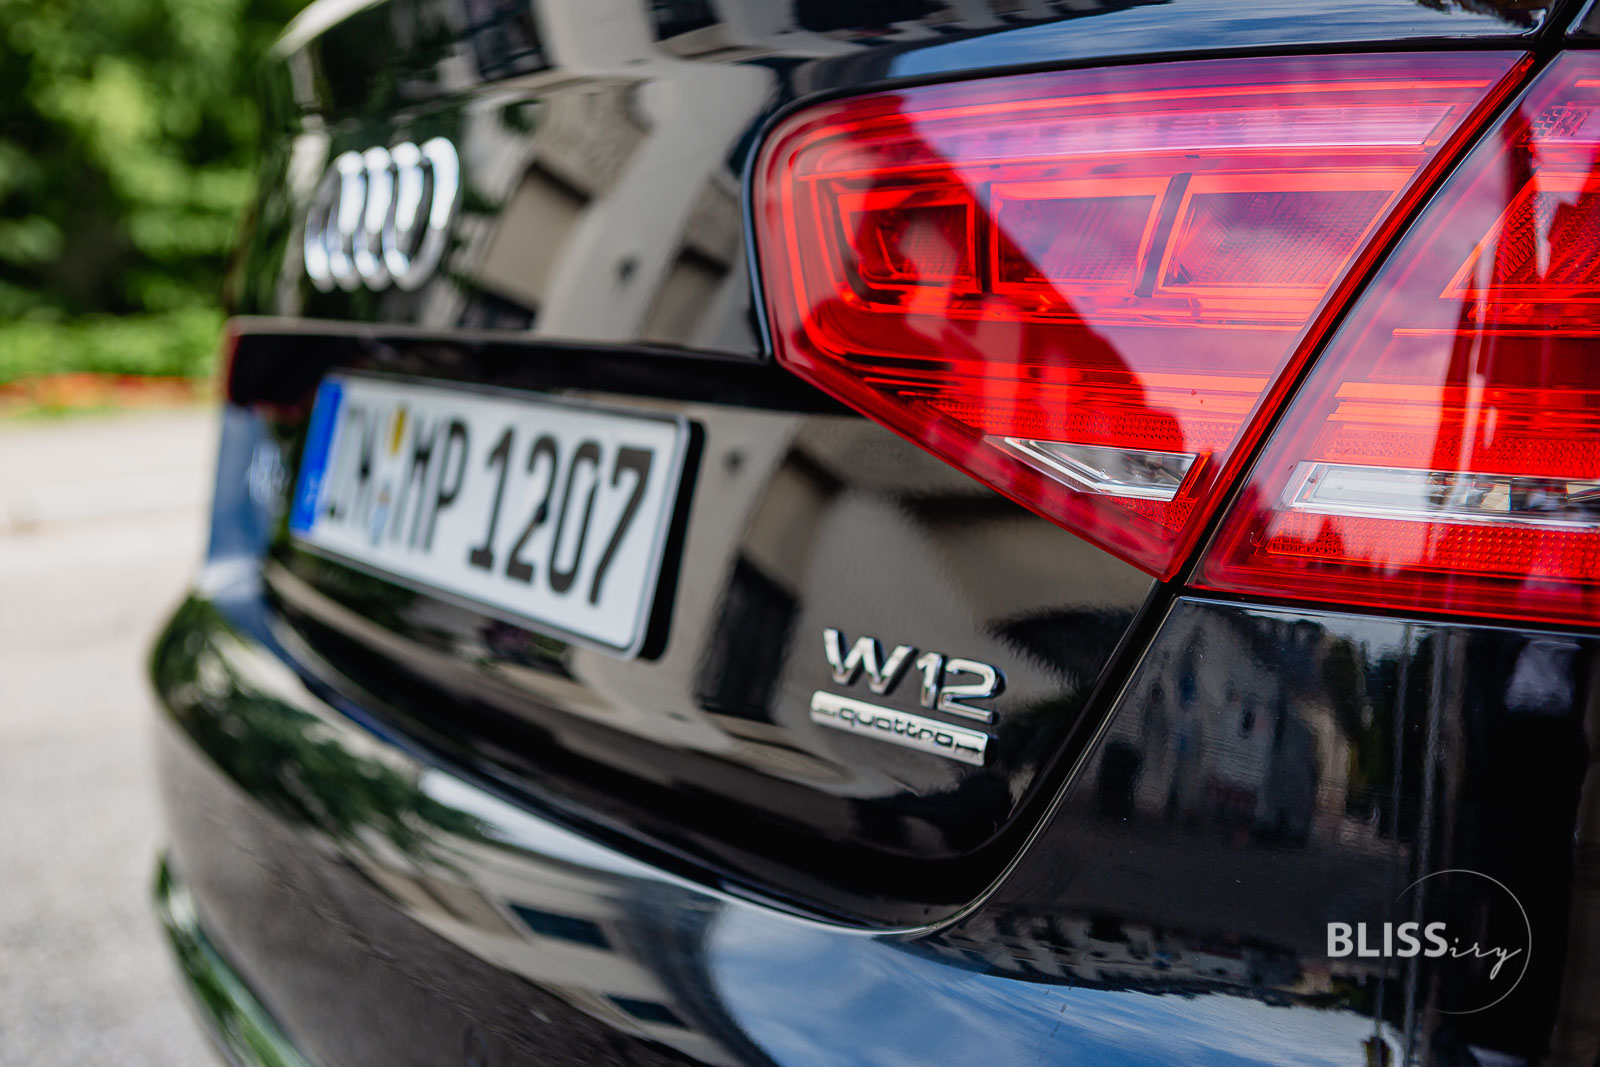 AUDI A8L 6.3 W12 - Fahrgefühl und Luxus-Limousine Luxusauto mit Liegesitz im Test und Erfahrung zum Event als VIP